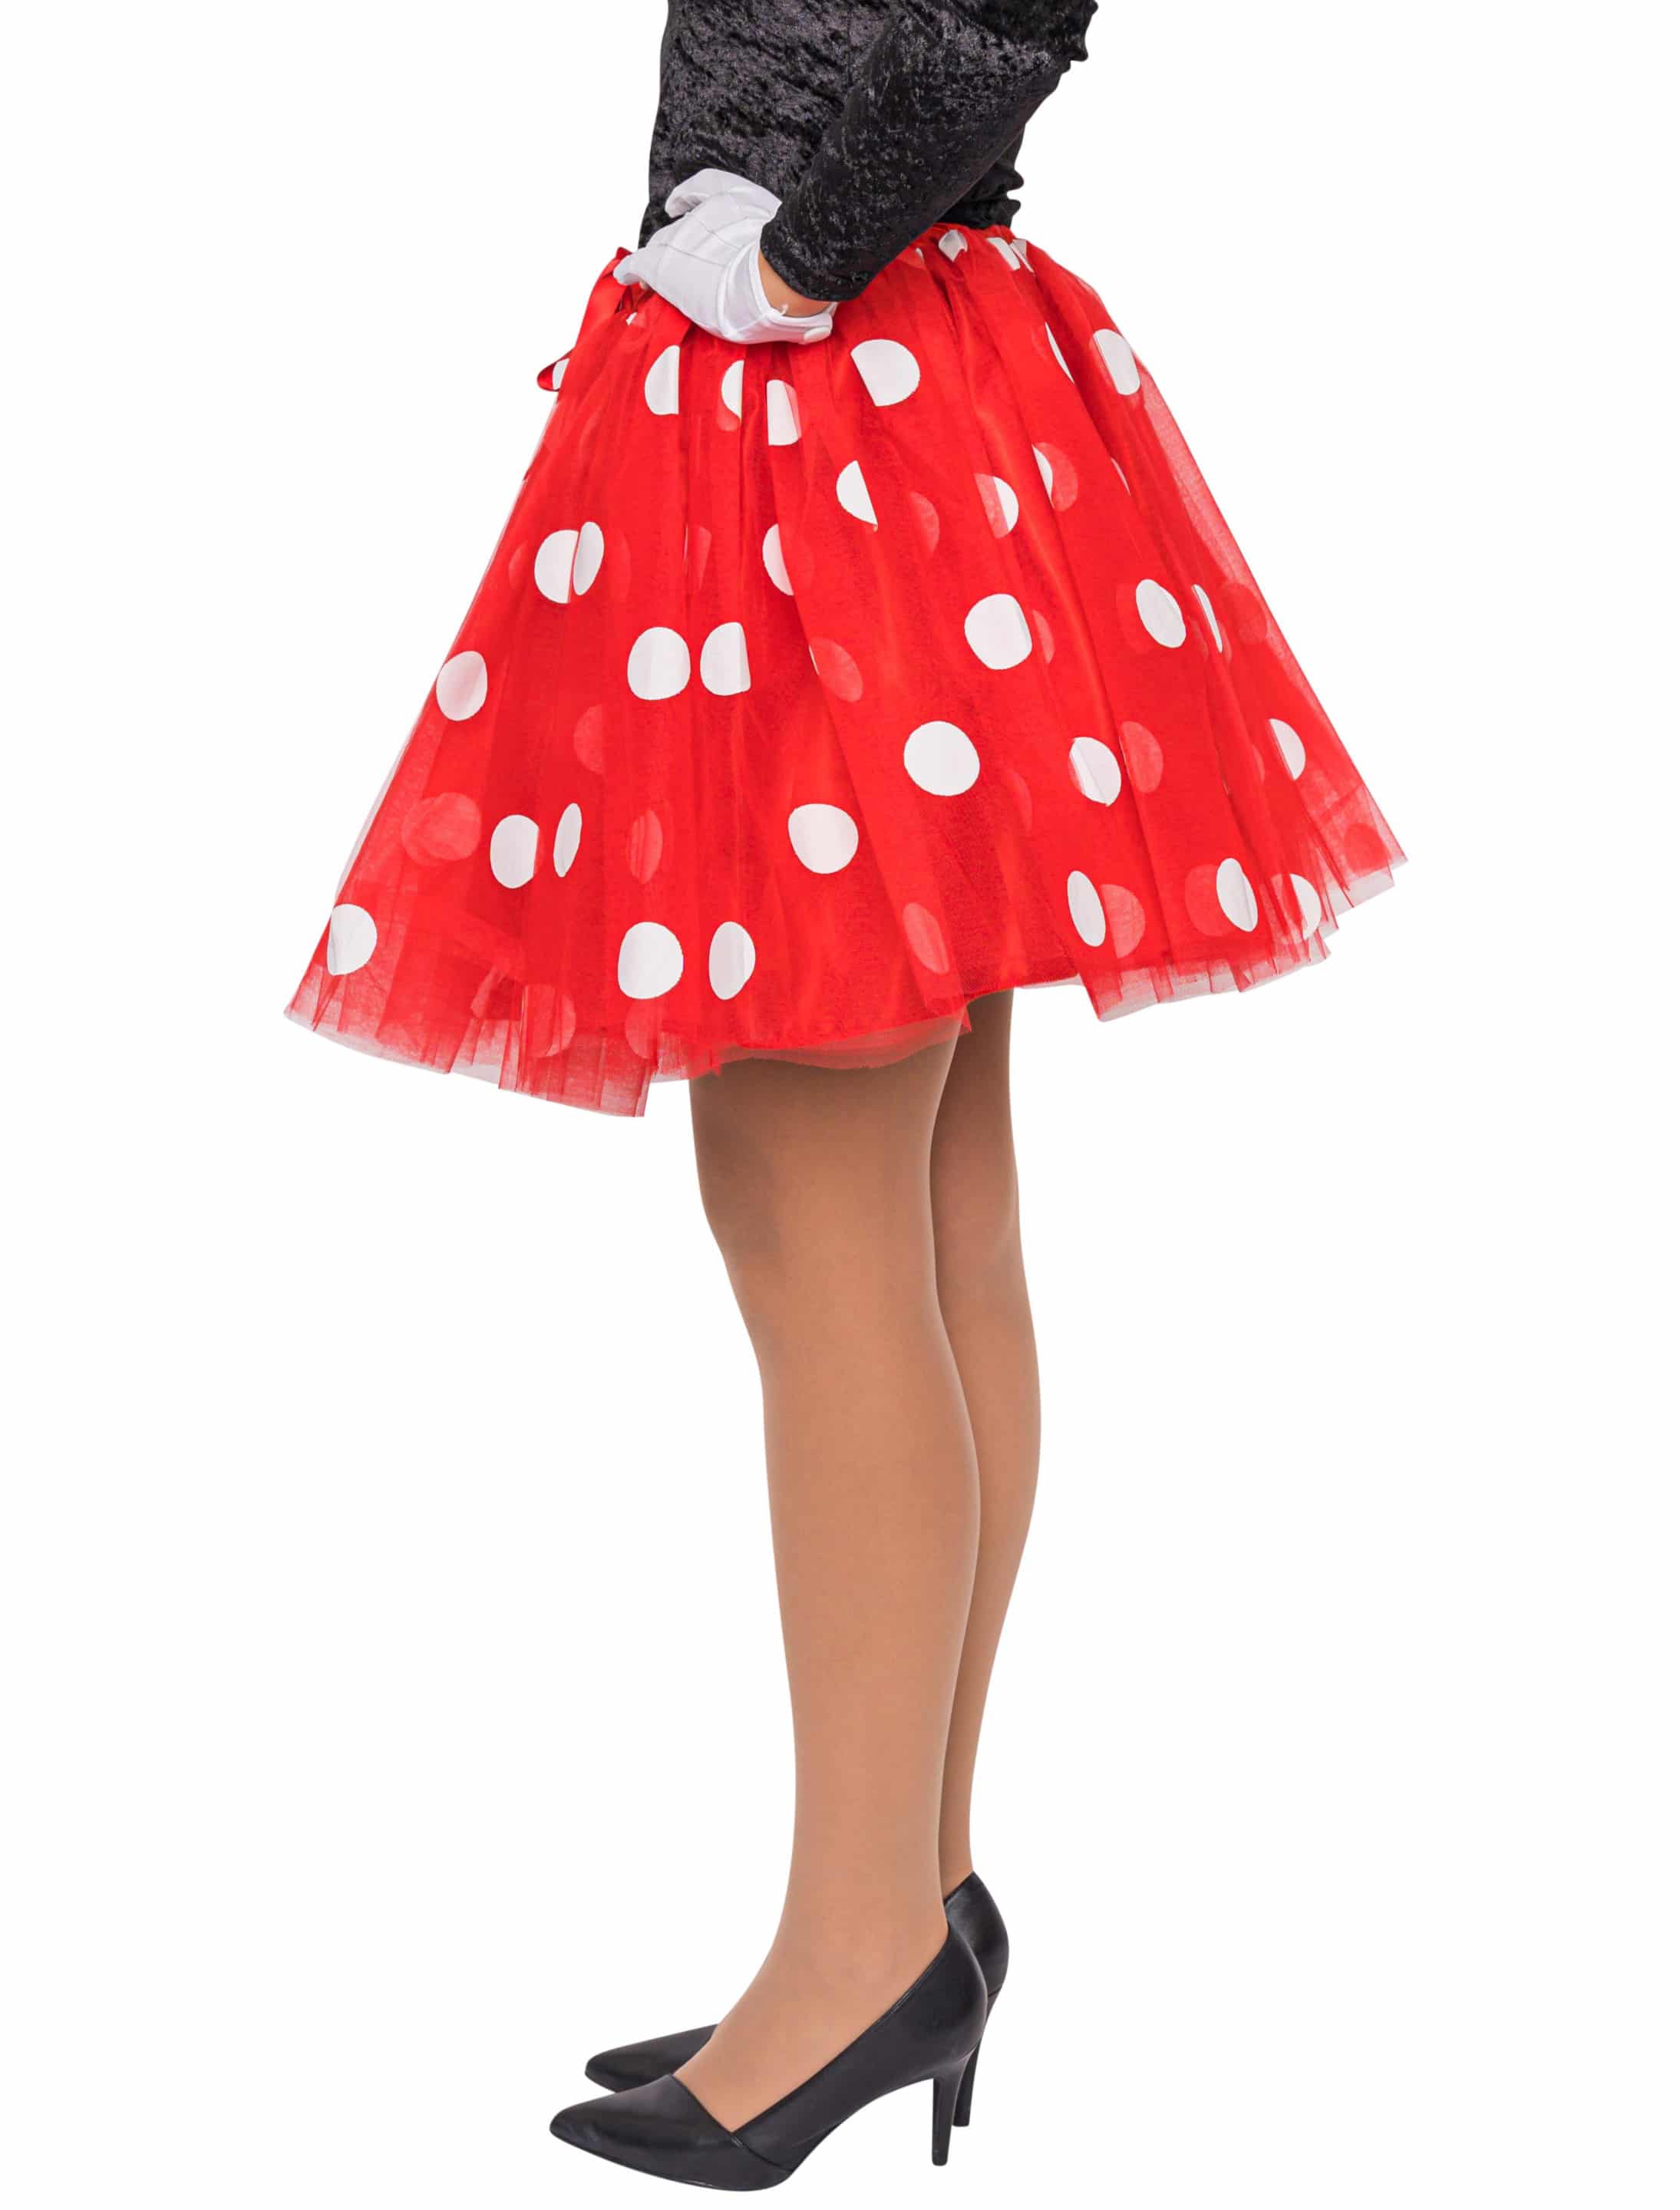 Petticoat Maus Damen für Karneval & Fasching kaufen » Deiters